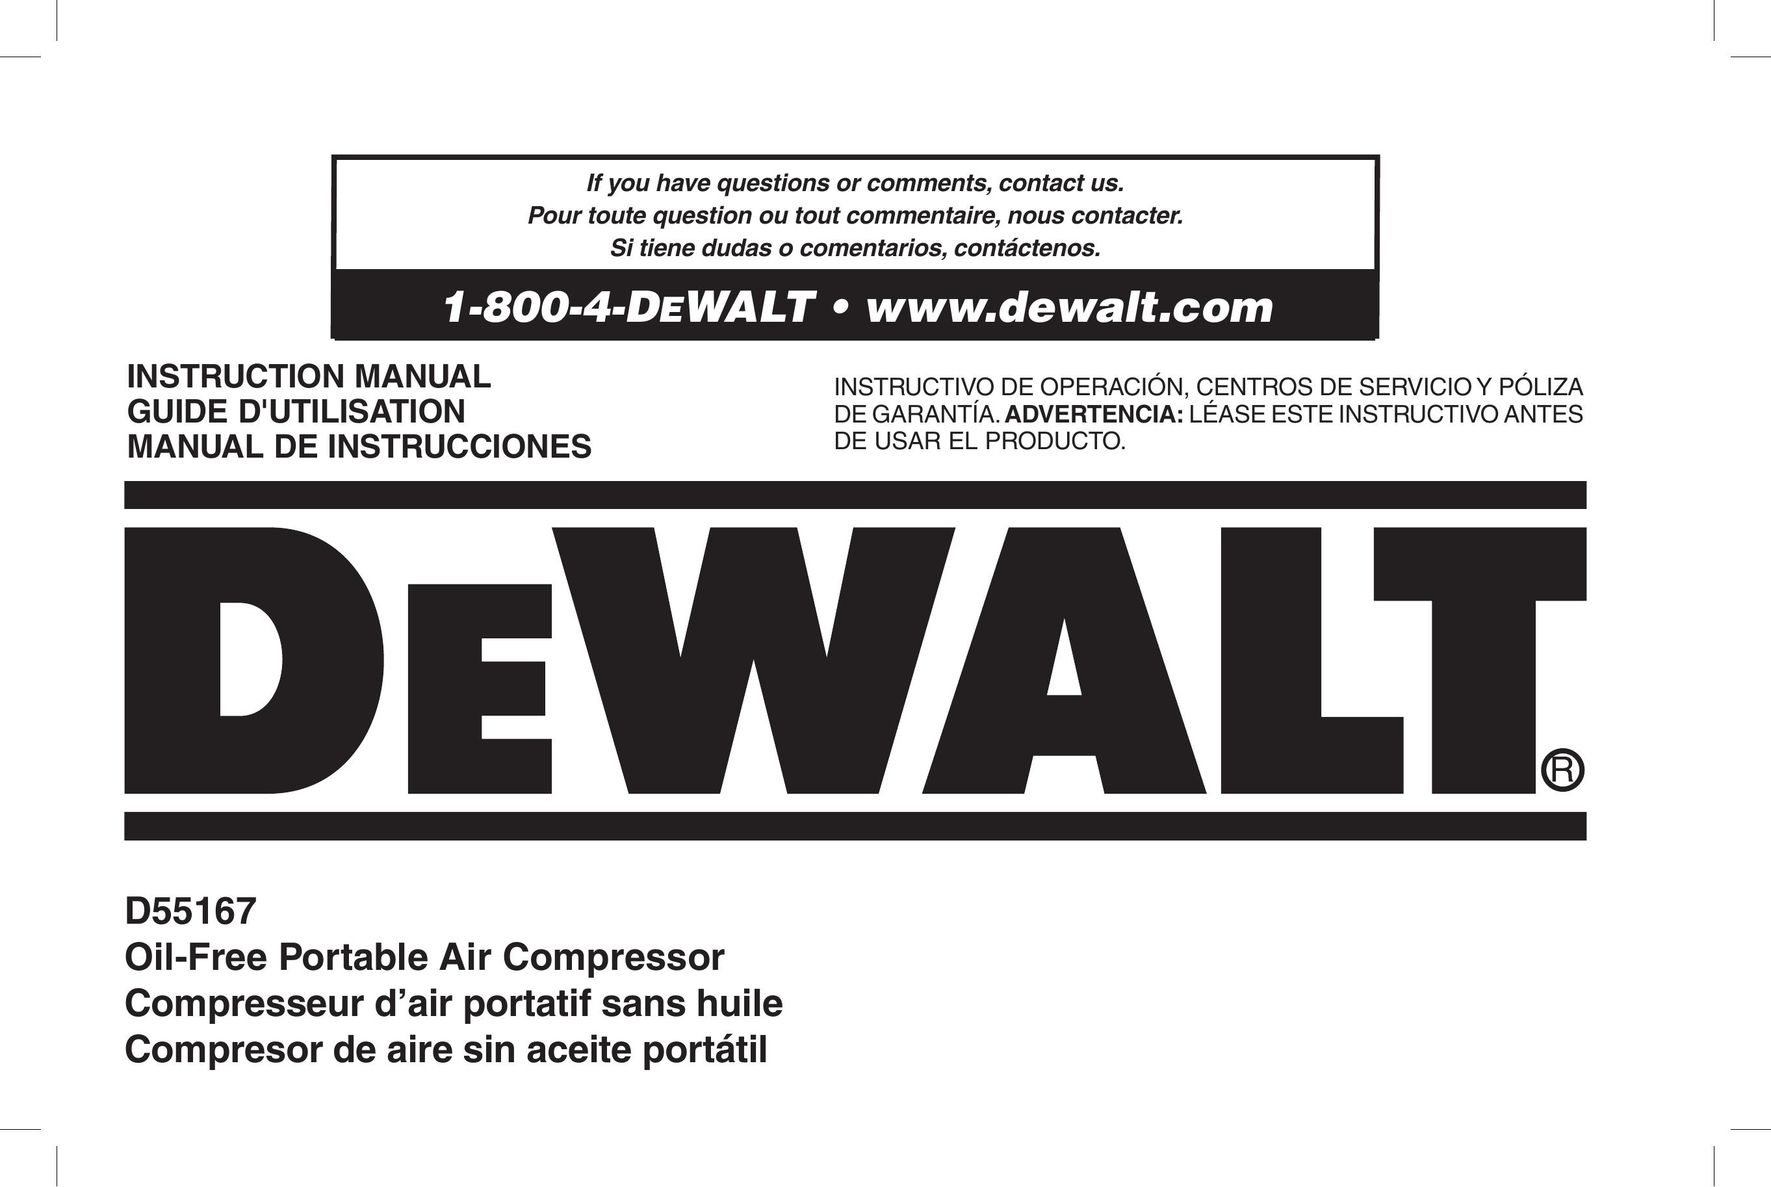 DeWalt D55167 Air Compressor User Manual